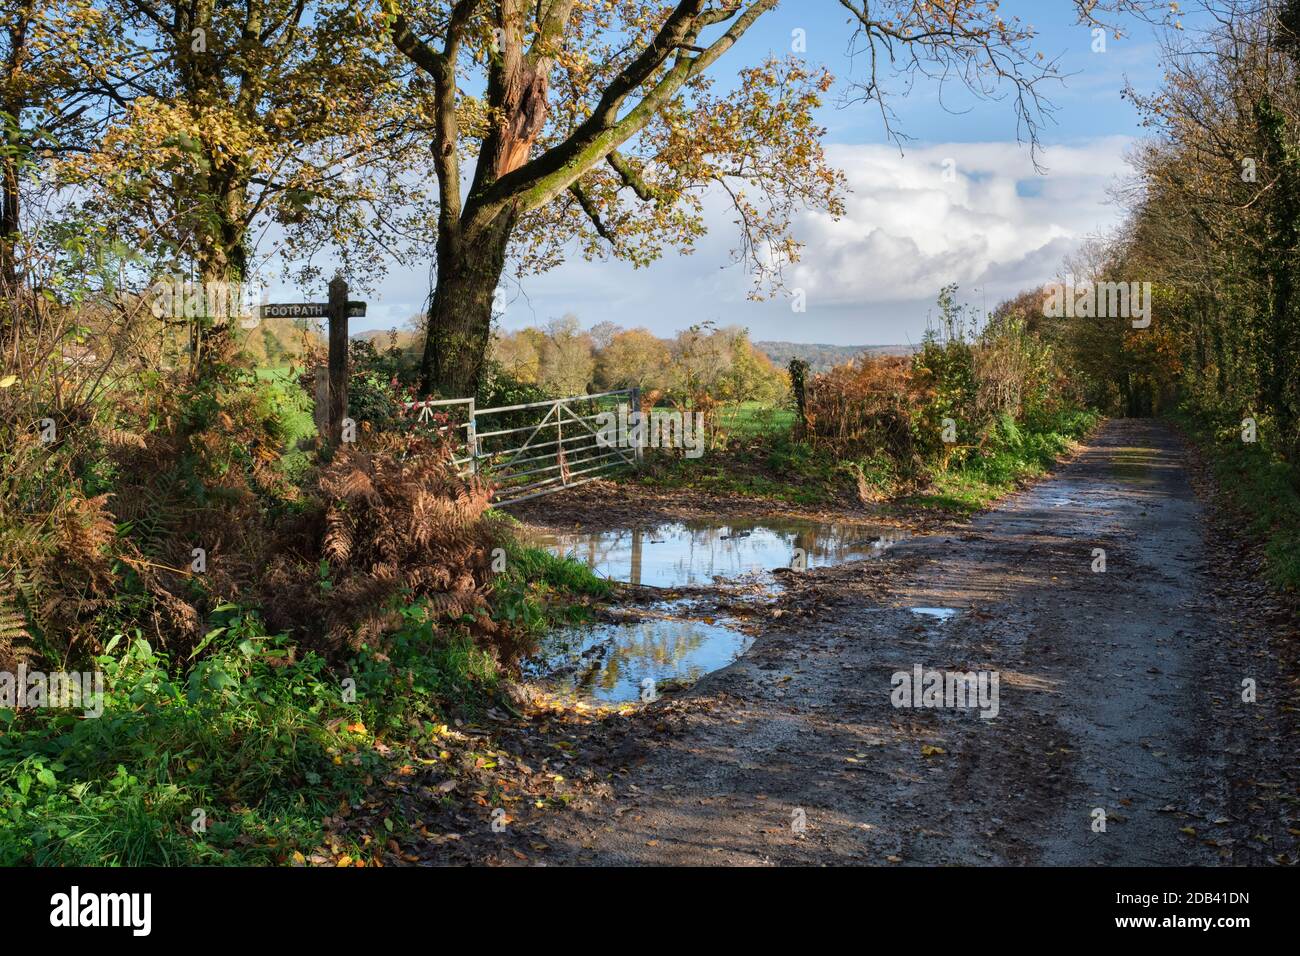 Route de campagne humide et étroite dans les zones rurales du sud du pays de Galles. Banque D'Images